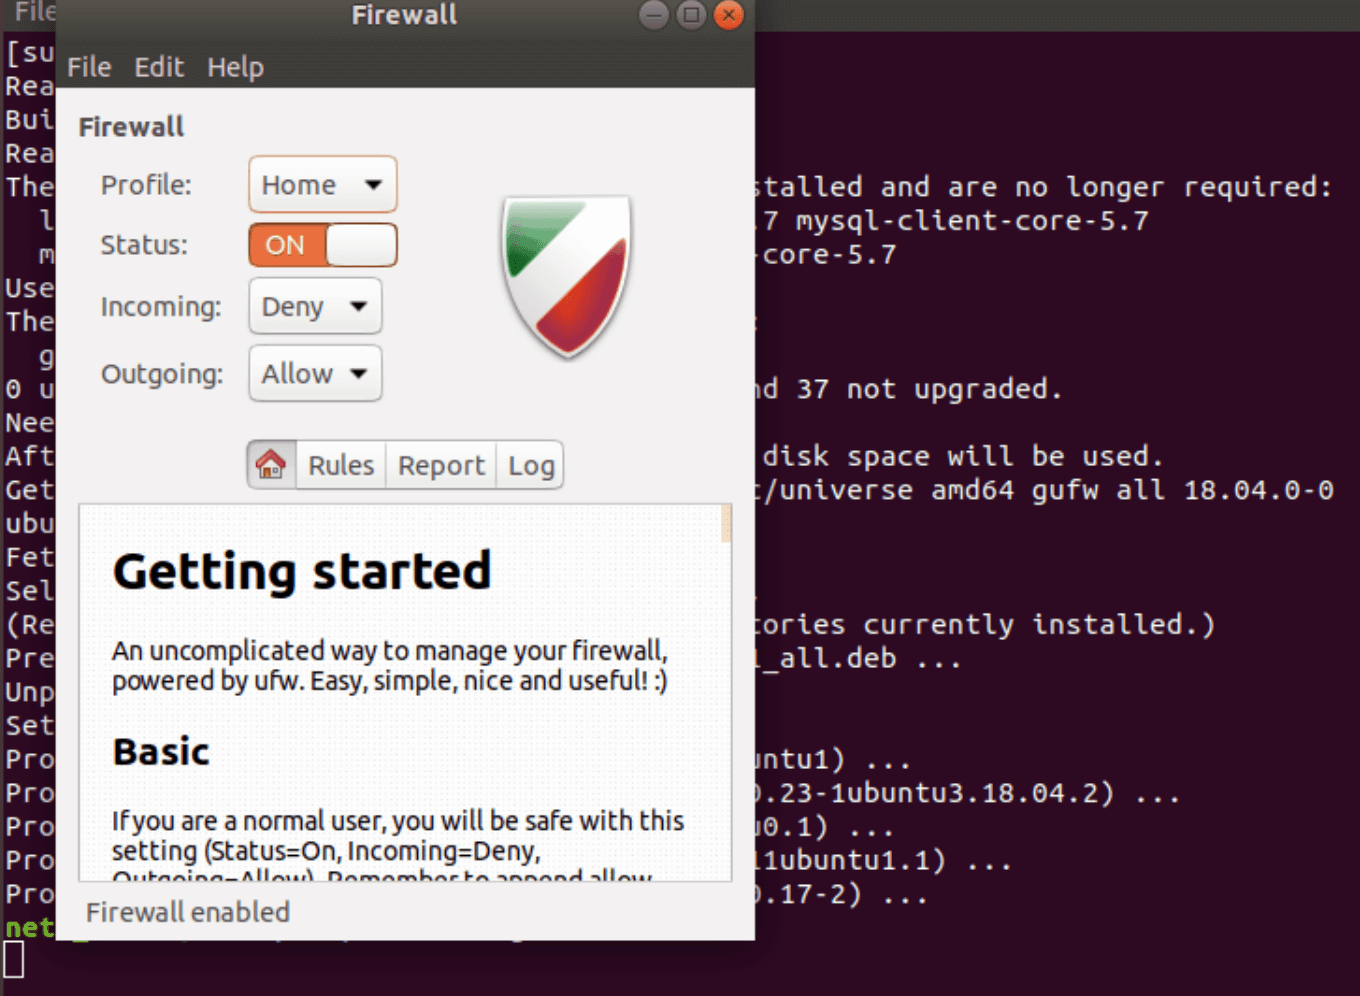 How to set up a firewall on Ubuntu 18.04